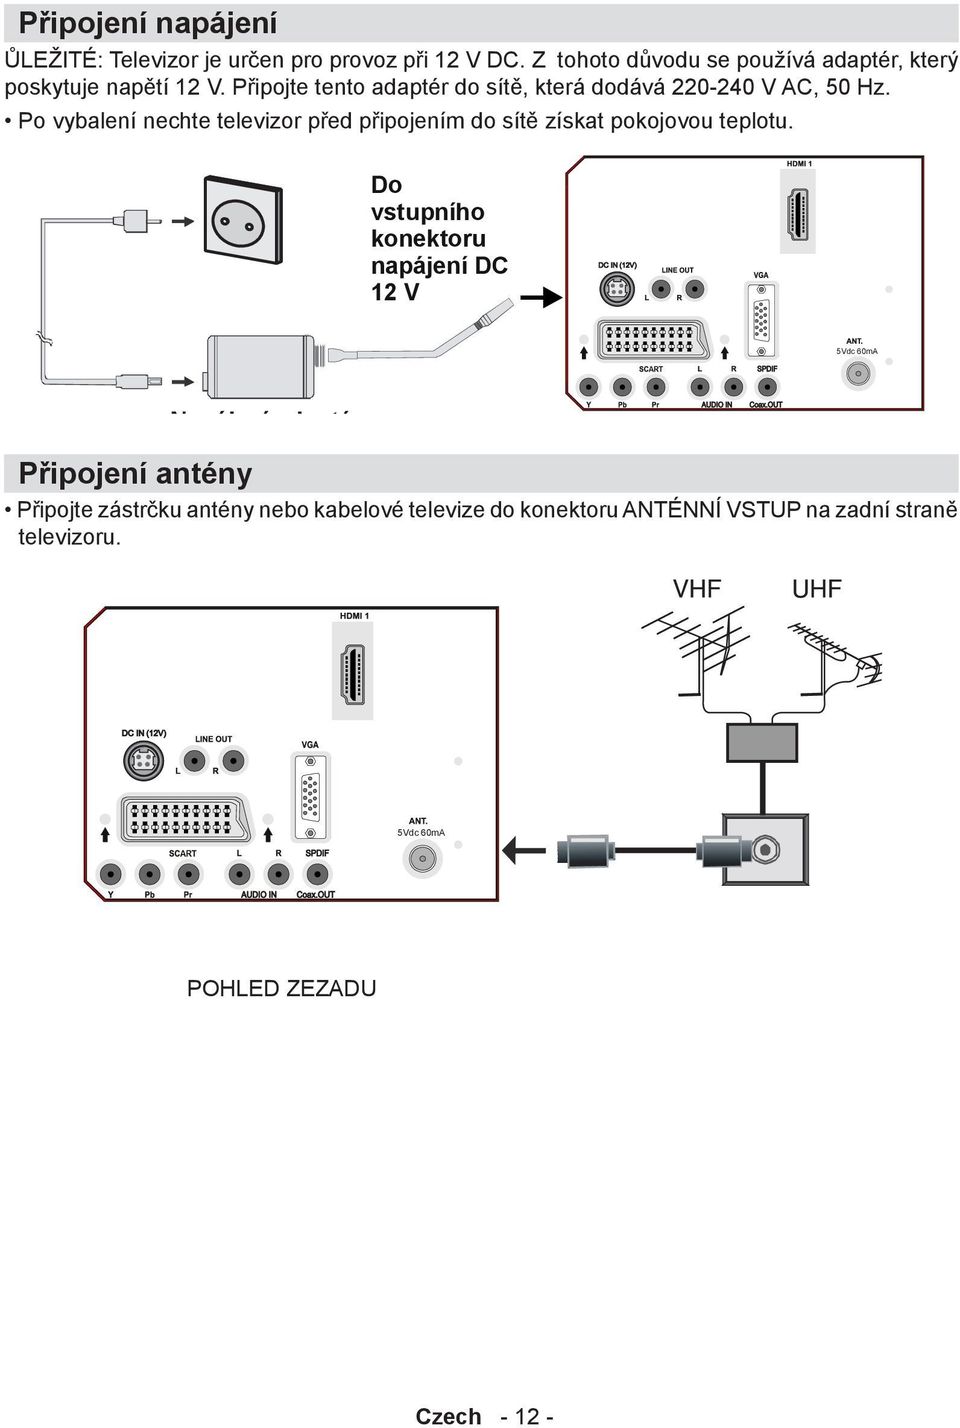 Připojte tento adaptér do sítě, která dodává 220-240 V AC, 50 Hz.